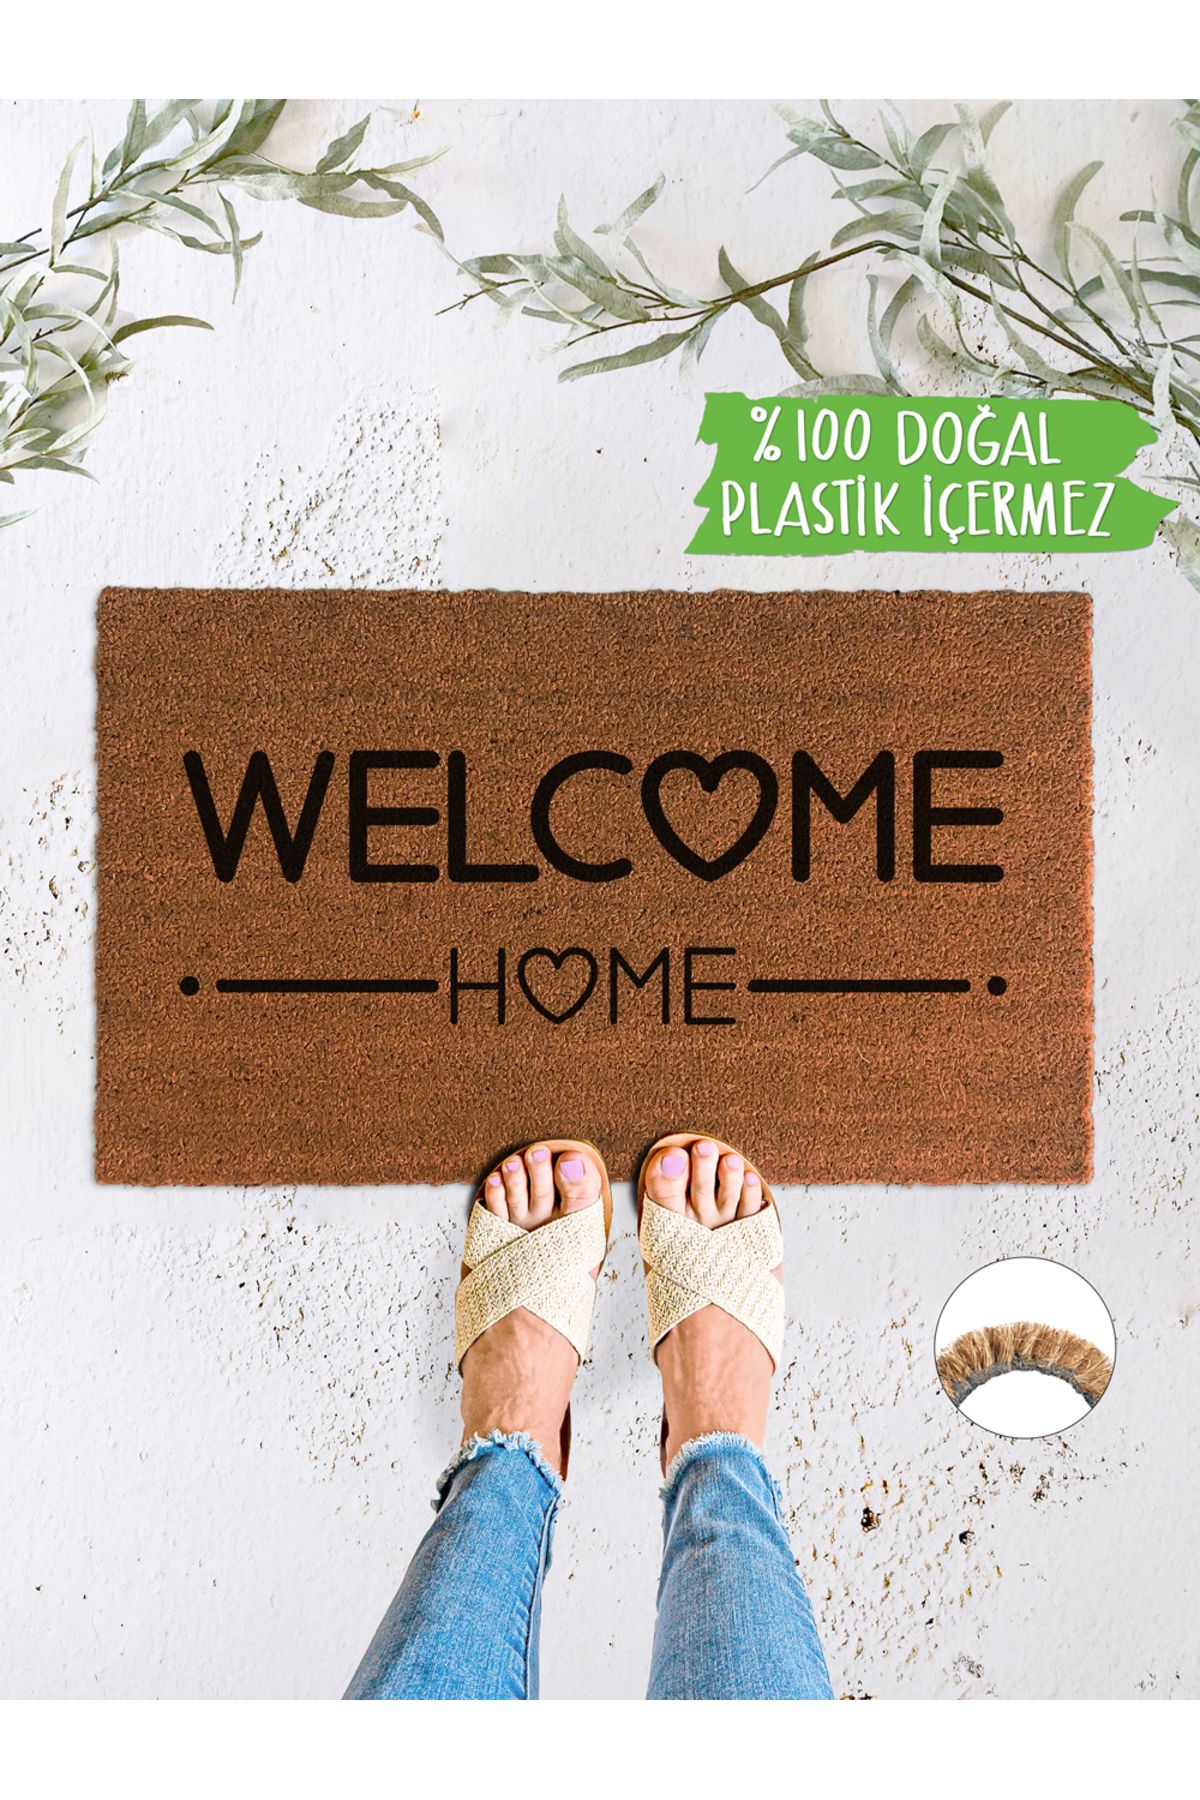 Evaşk Welcome Home %100 Doğal Koko Kıl Kapı Önü Paspası Plastik Içermez Çevreci Doğal Lateks Kaymaz Taban